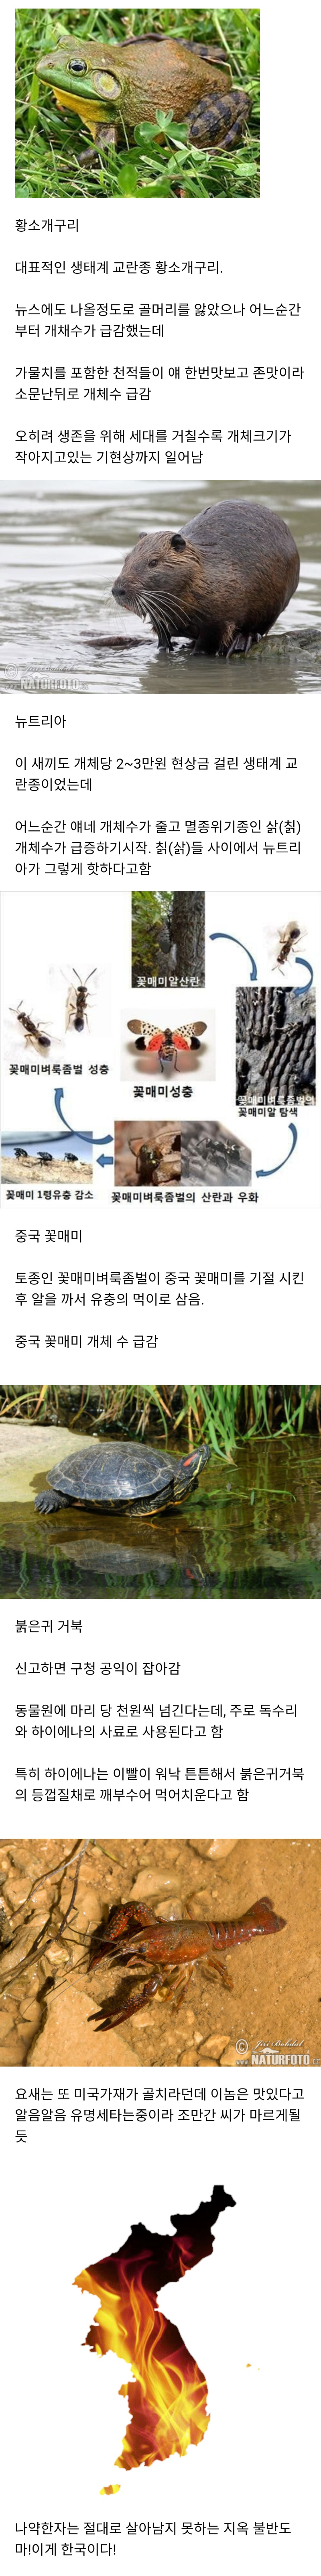 한국에 온 외래종들.jpg